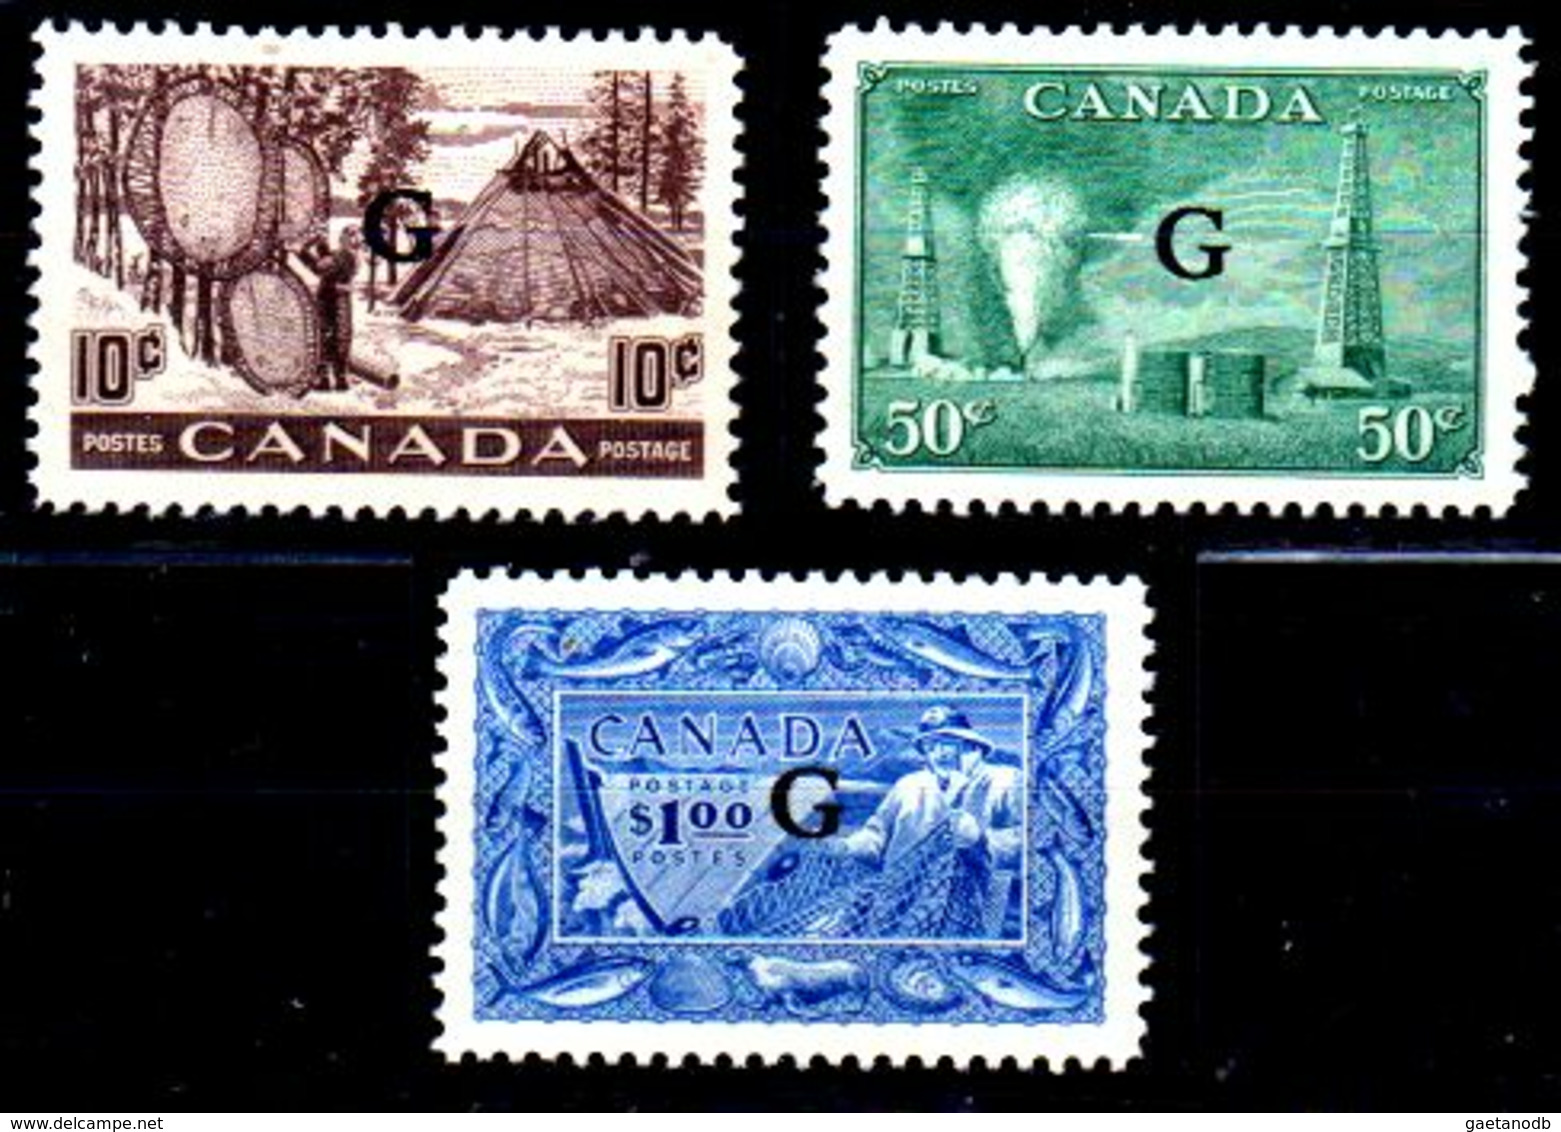 B355-Canada: SERVIZI 1950-52 (++) MNH - Senza Difetti Occulti - - Overprinted